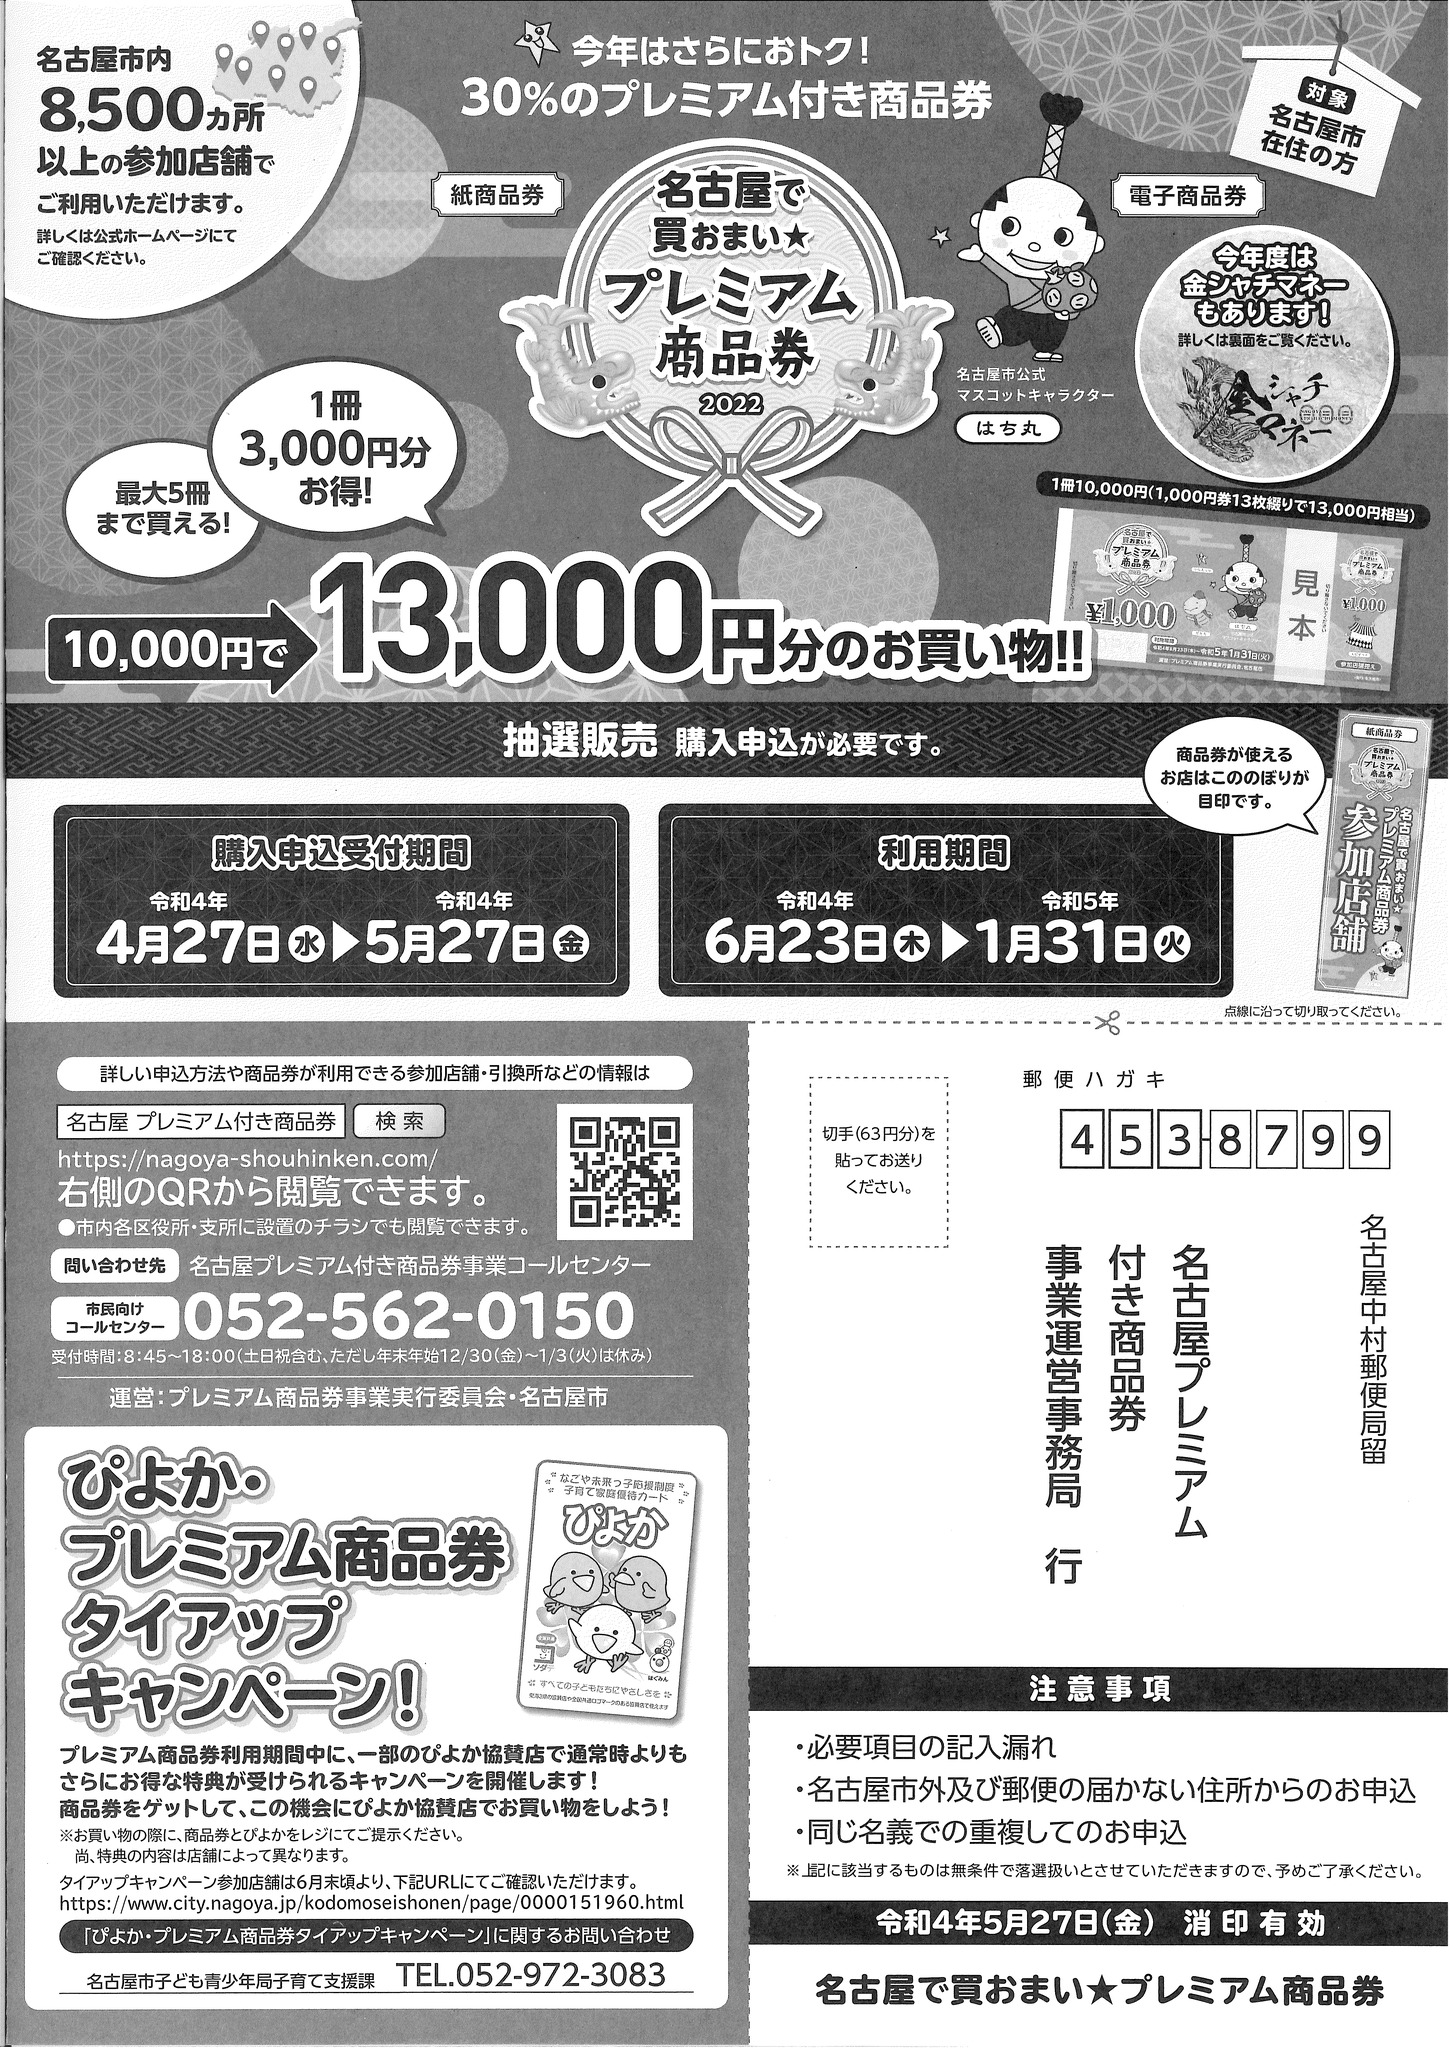 名古屋で買おまい☆プレミアム商品券 2022」「金シャチマネー」購入 